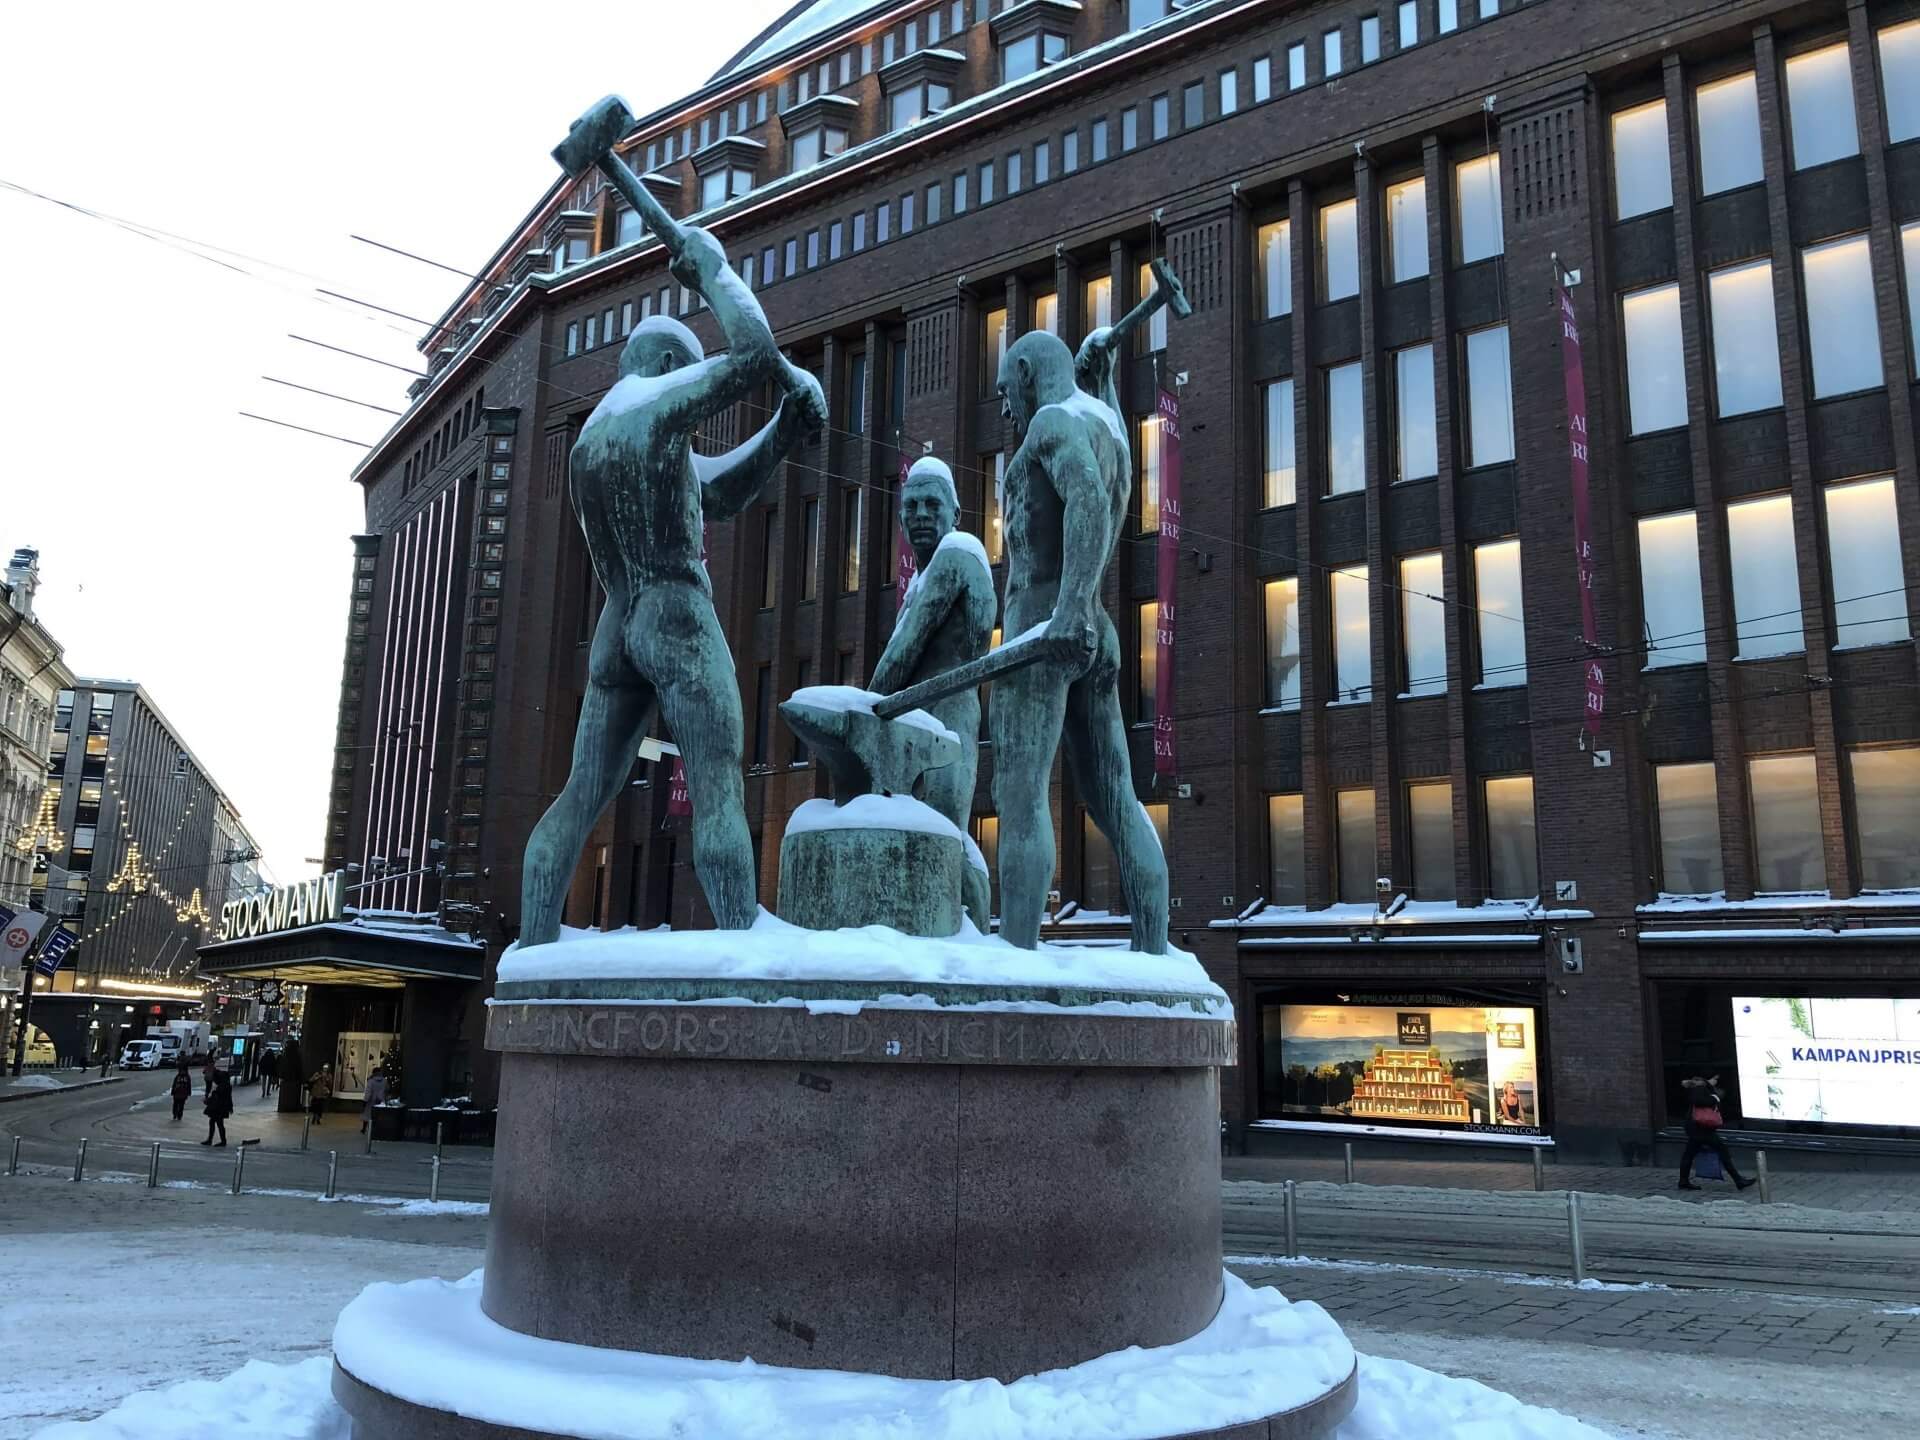 ストックマンの入り口前にある「三人の鍛冶屋像」は、ヘルシンキ市民の待ち合わせスポットとして有名とのこと